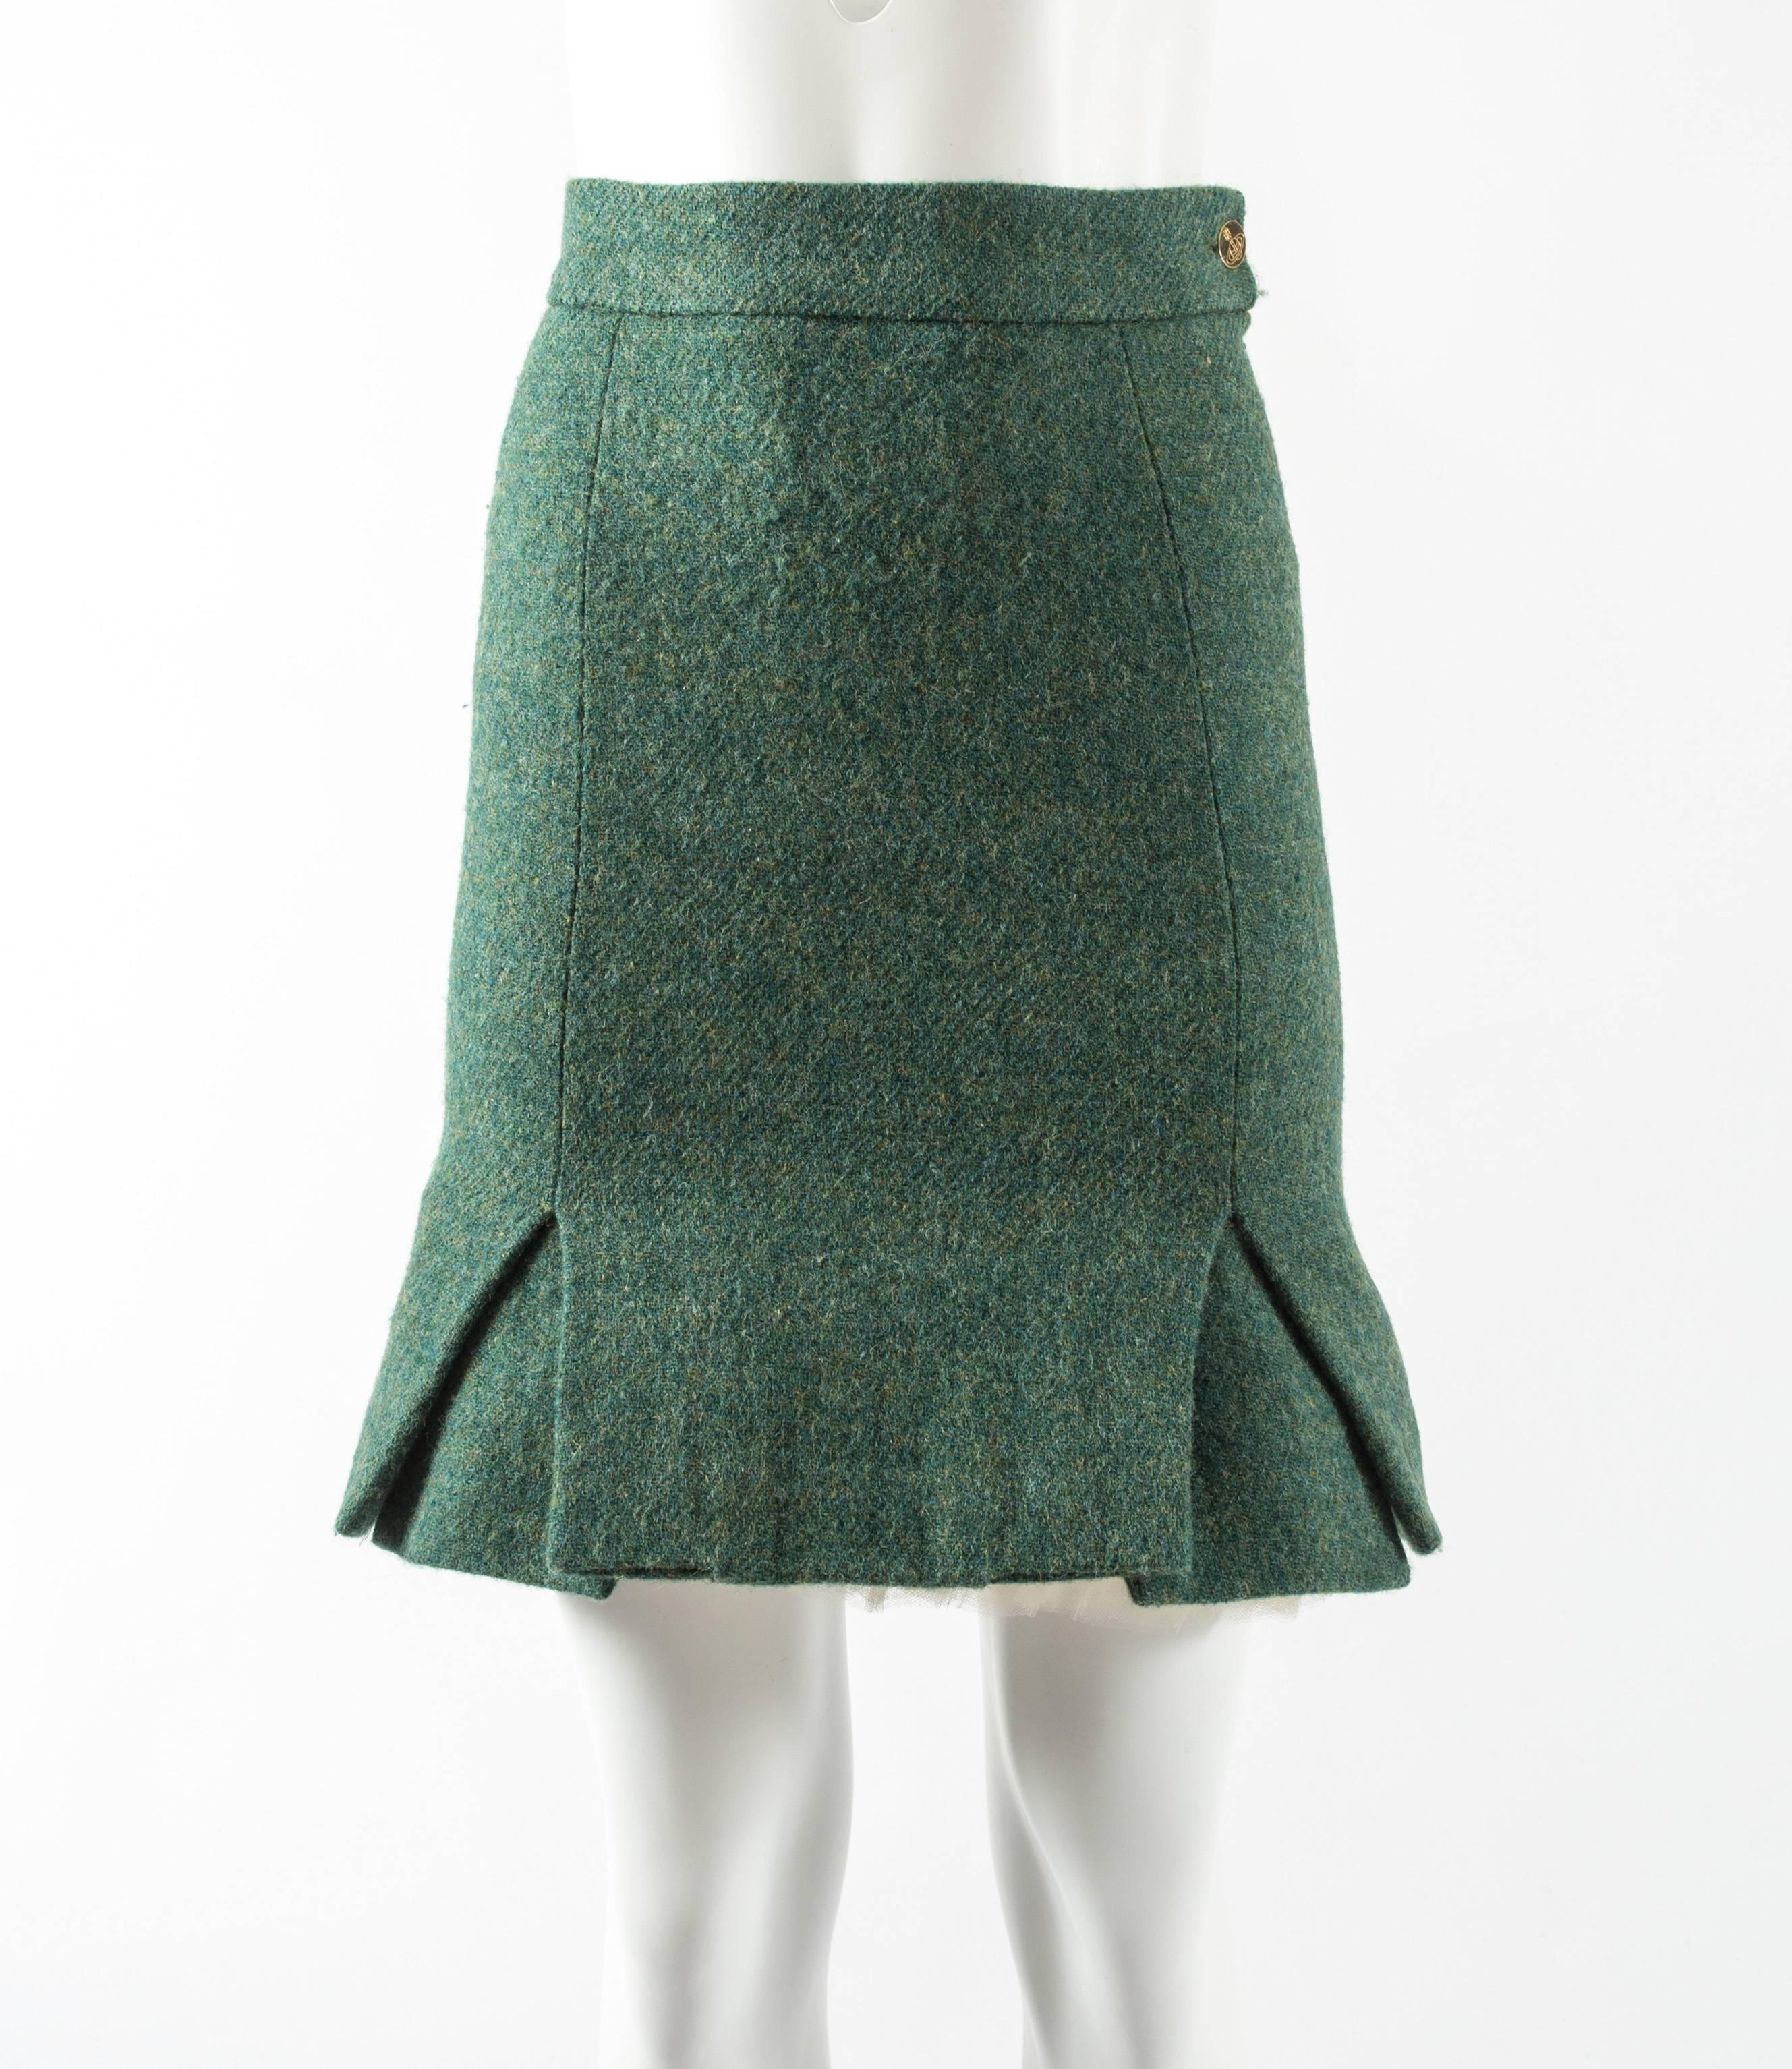 Voici la mini-jupe 'Time Machine' en tweed Harris vert de Vivienne Westwood, une création remarquable de la collection Automne-Hiver 1988 qui illustre le style audacieux et novateur de la créatrice.

Confectionnée à partir du meilleur tweed Harris